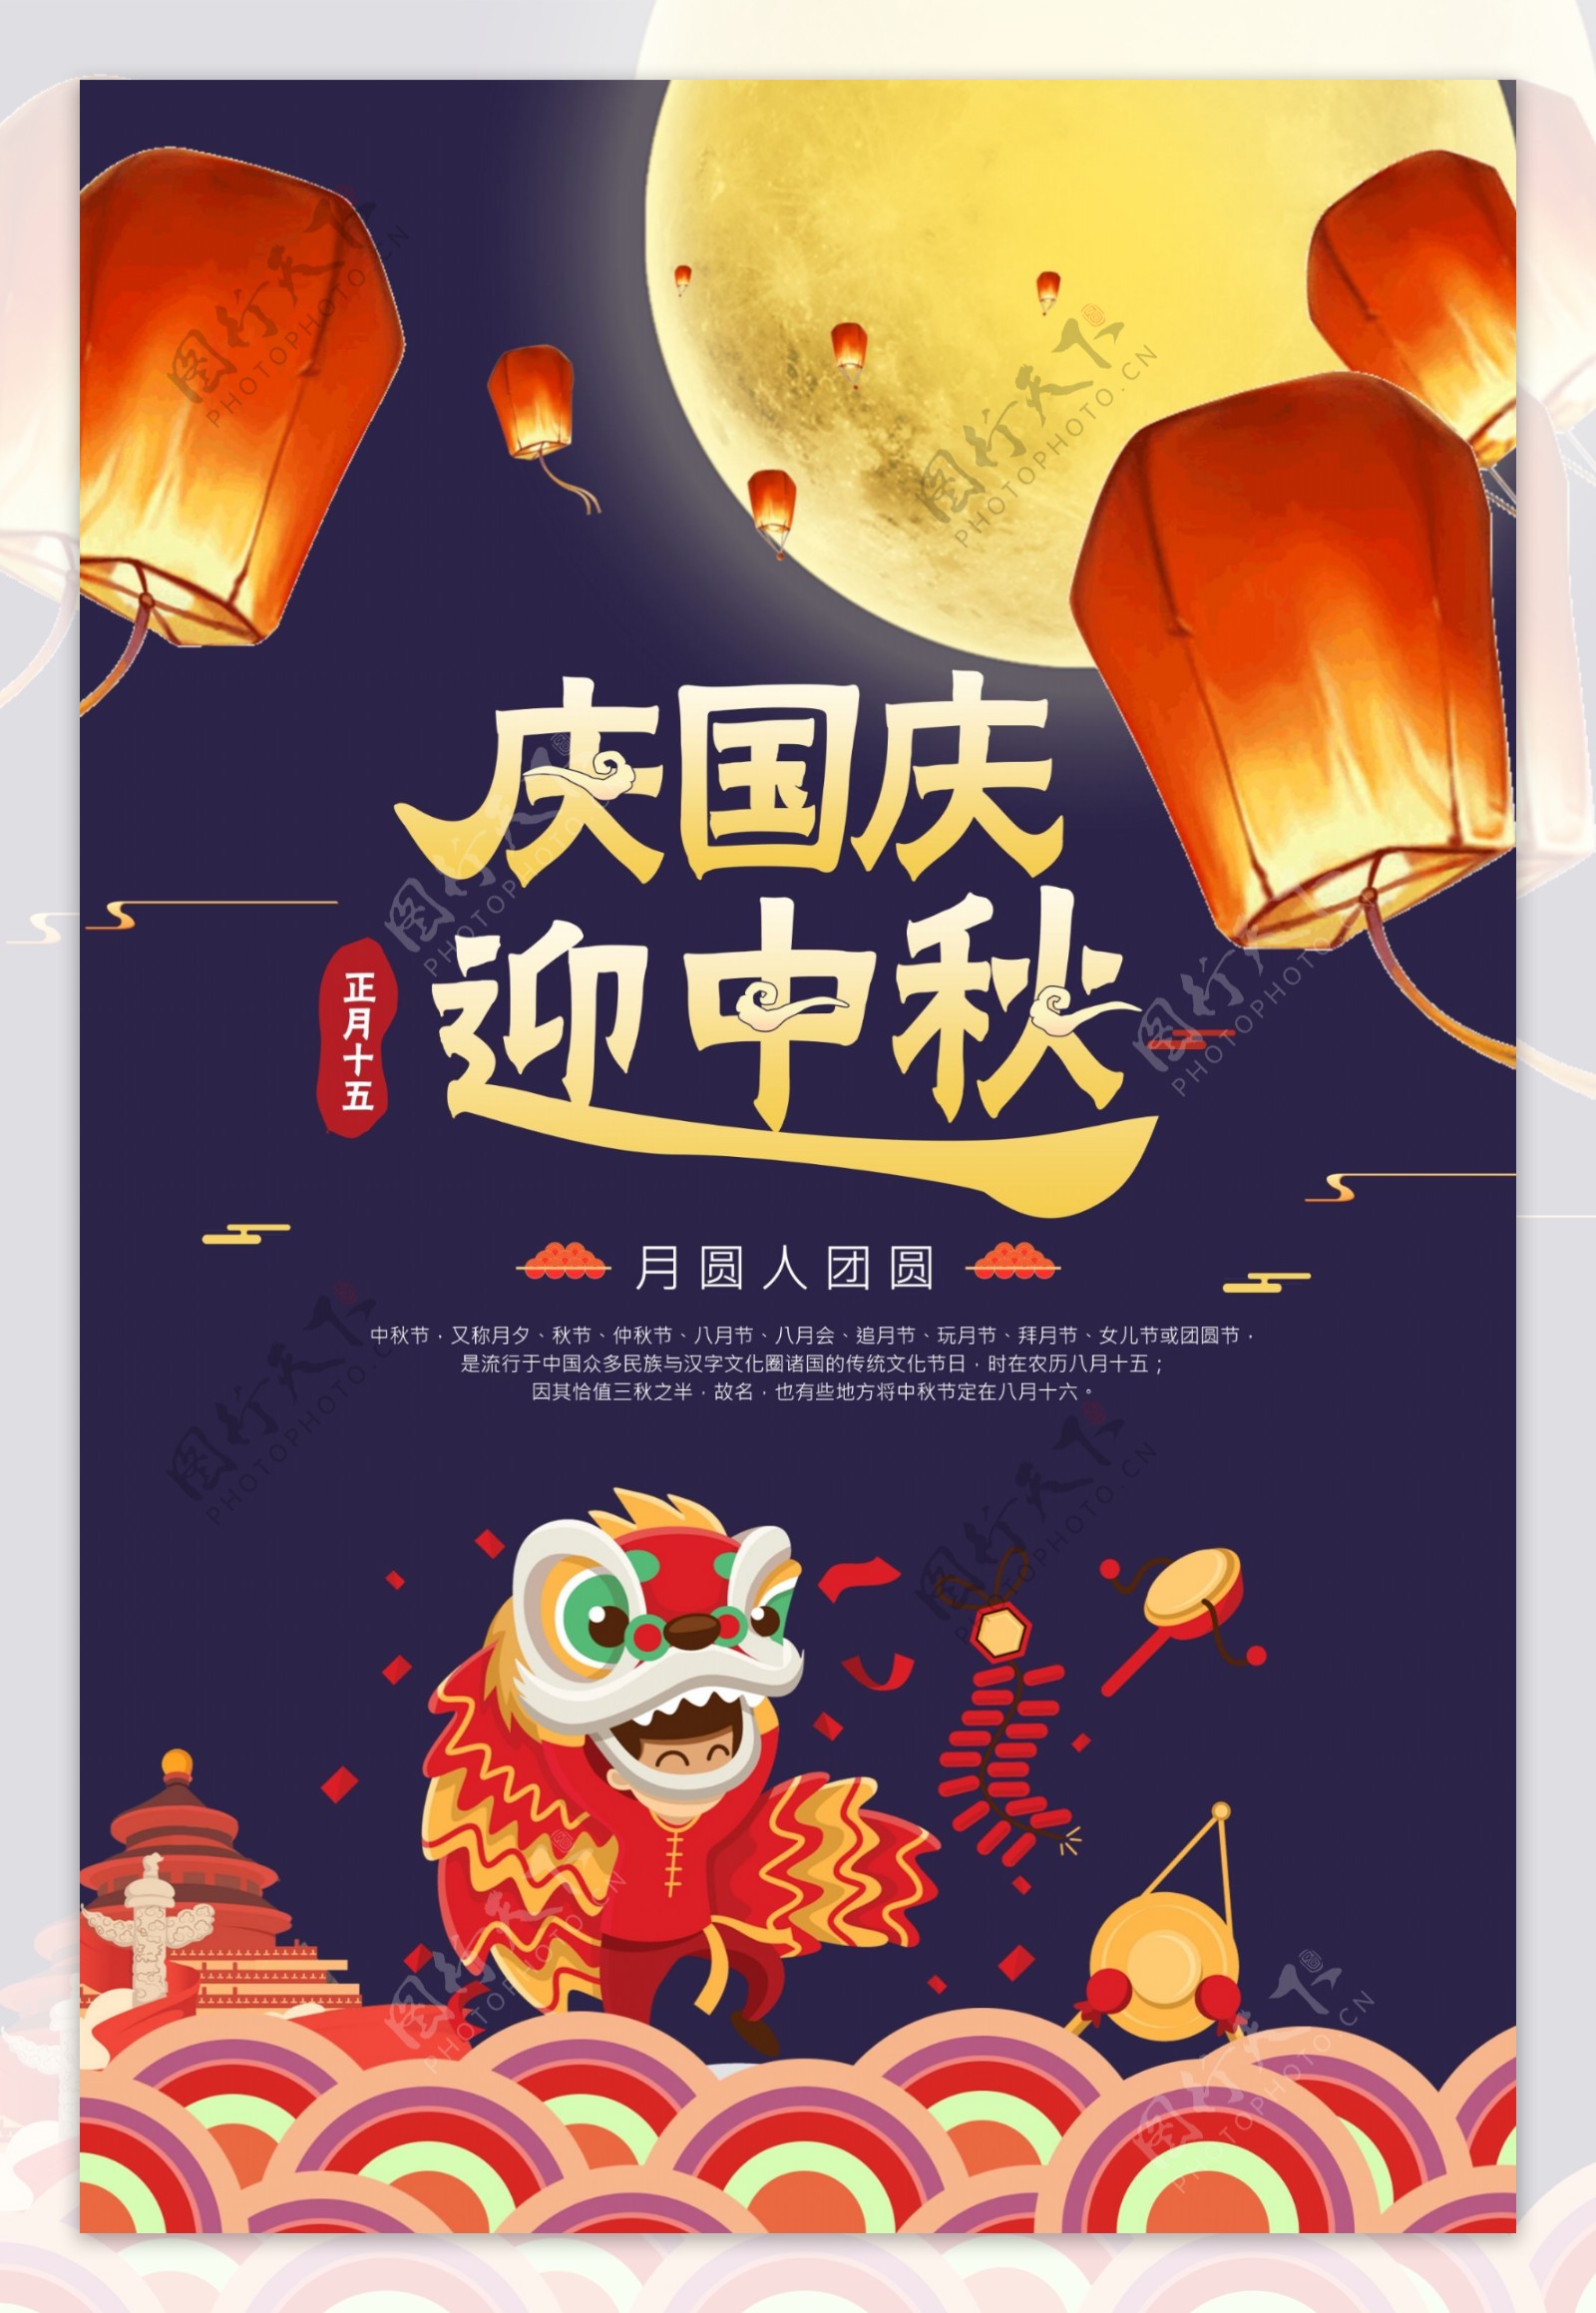 中秋国庆节日宣传活动促销海报